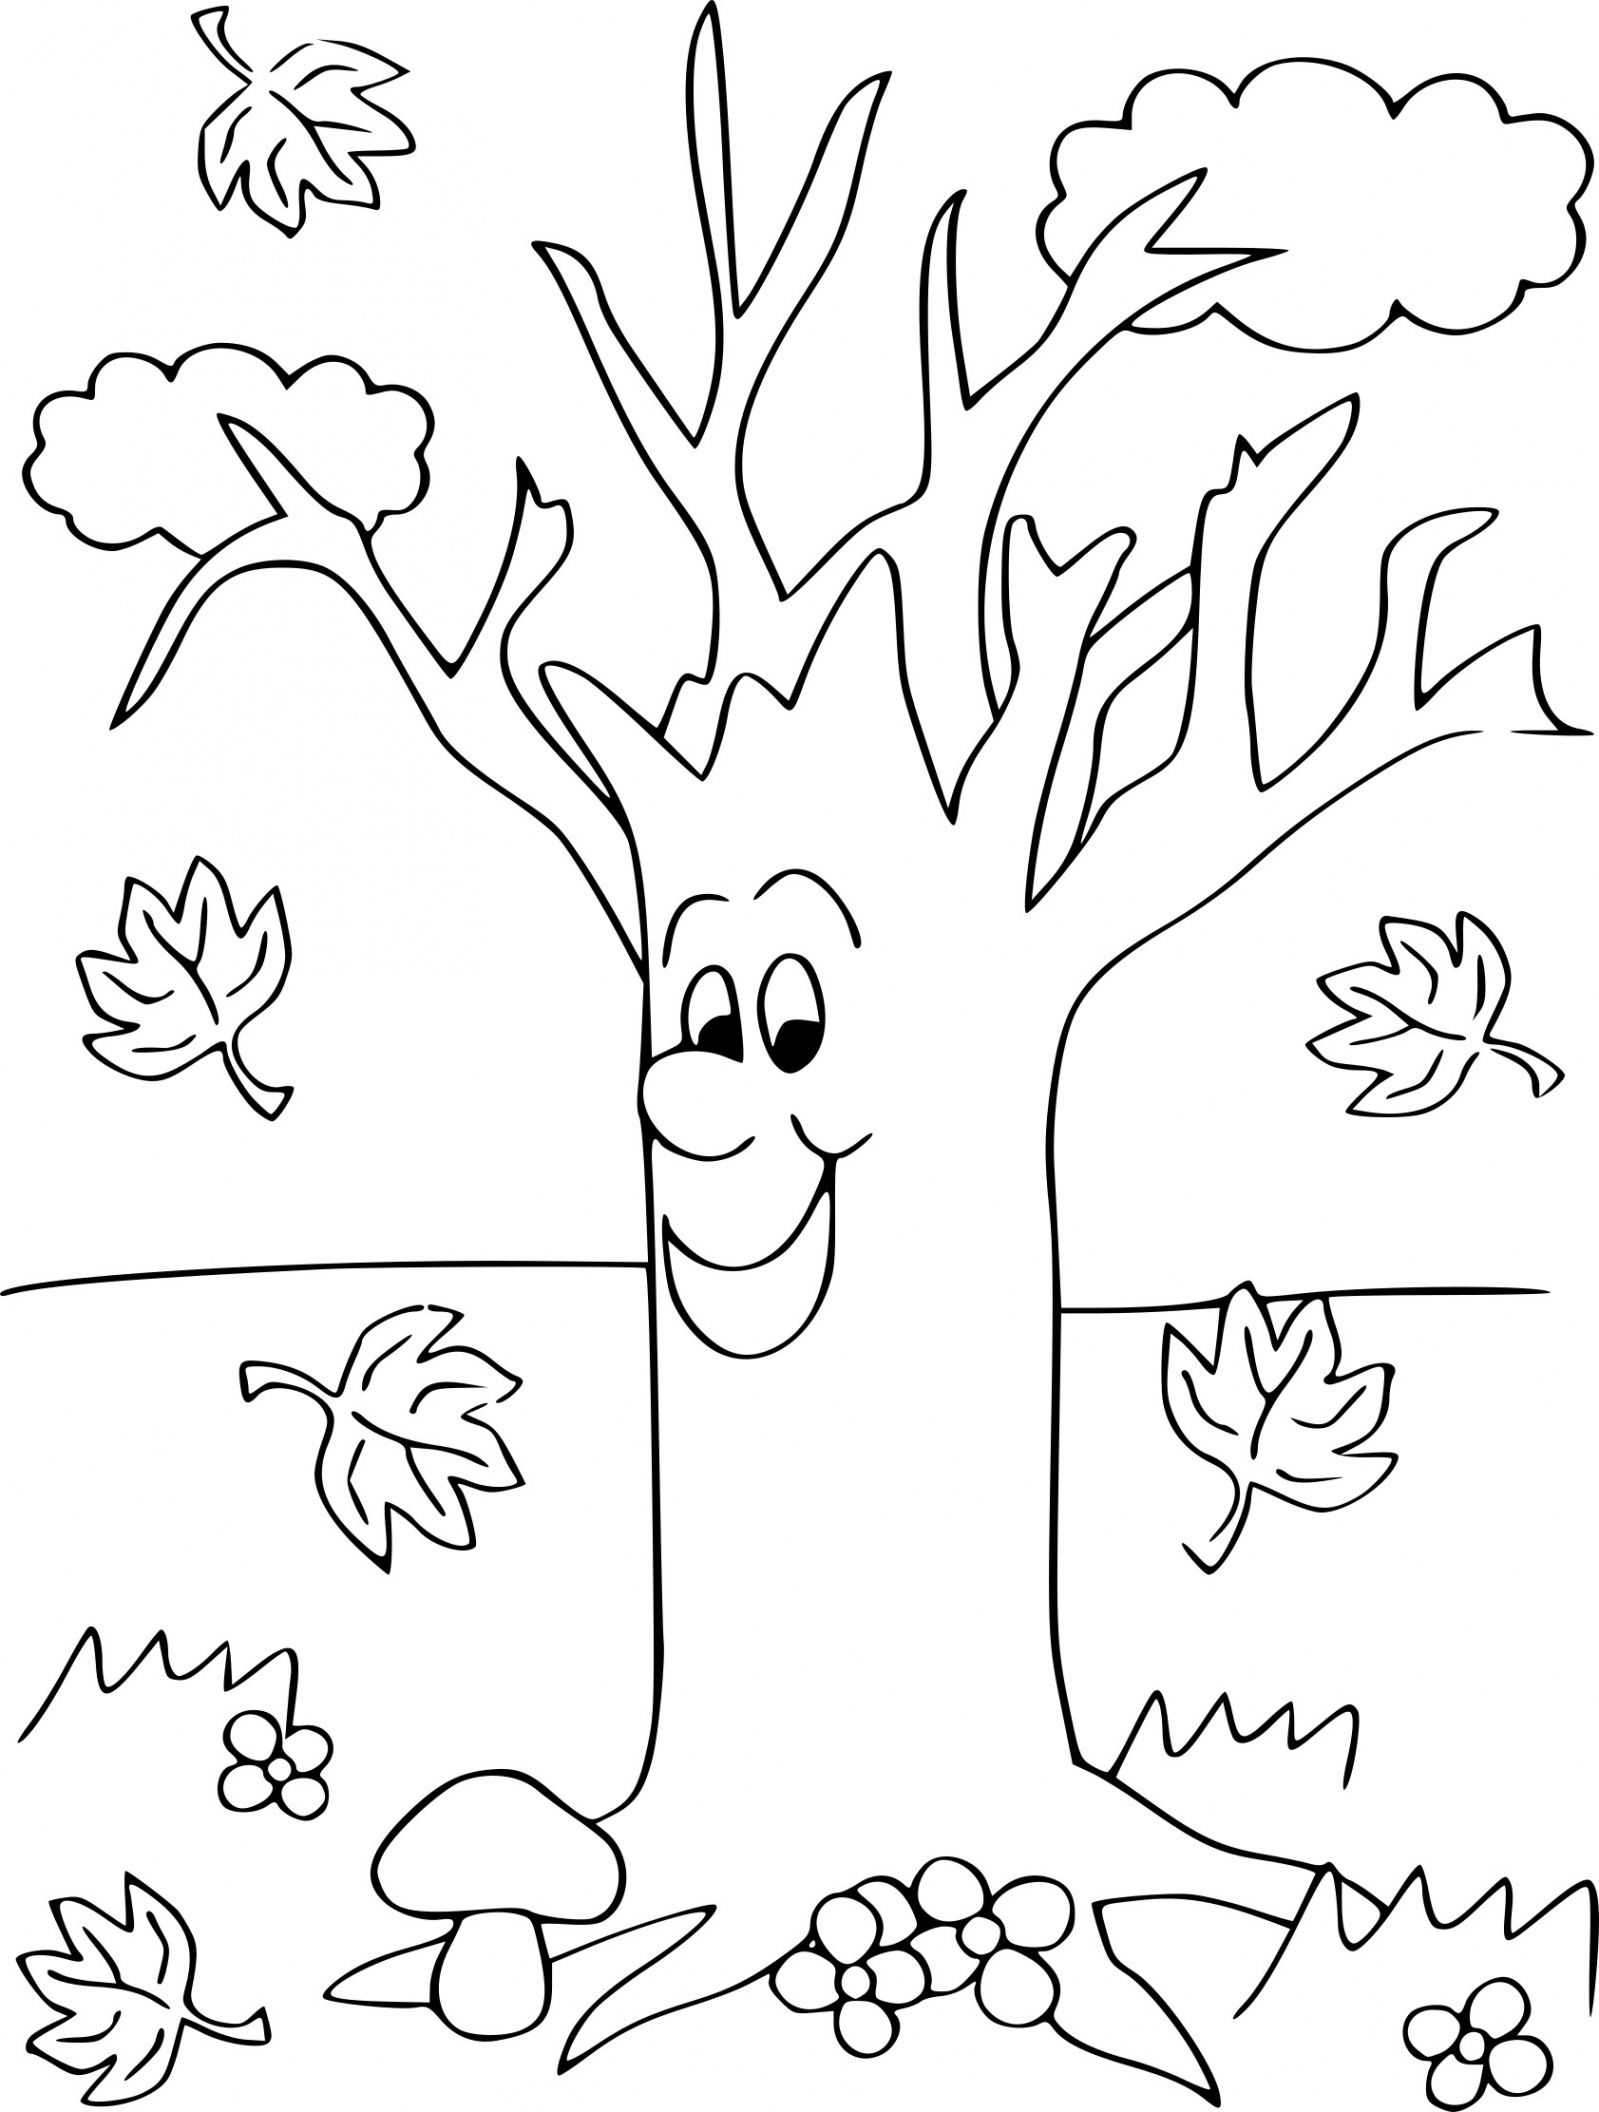 Раскраски для дошкольников на тему осень – раскраски осень распечатать бесплатно, скачать разукрашки